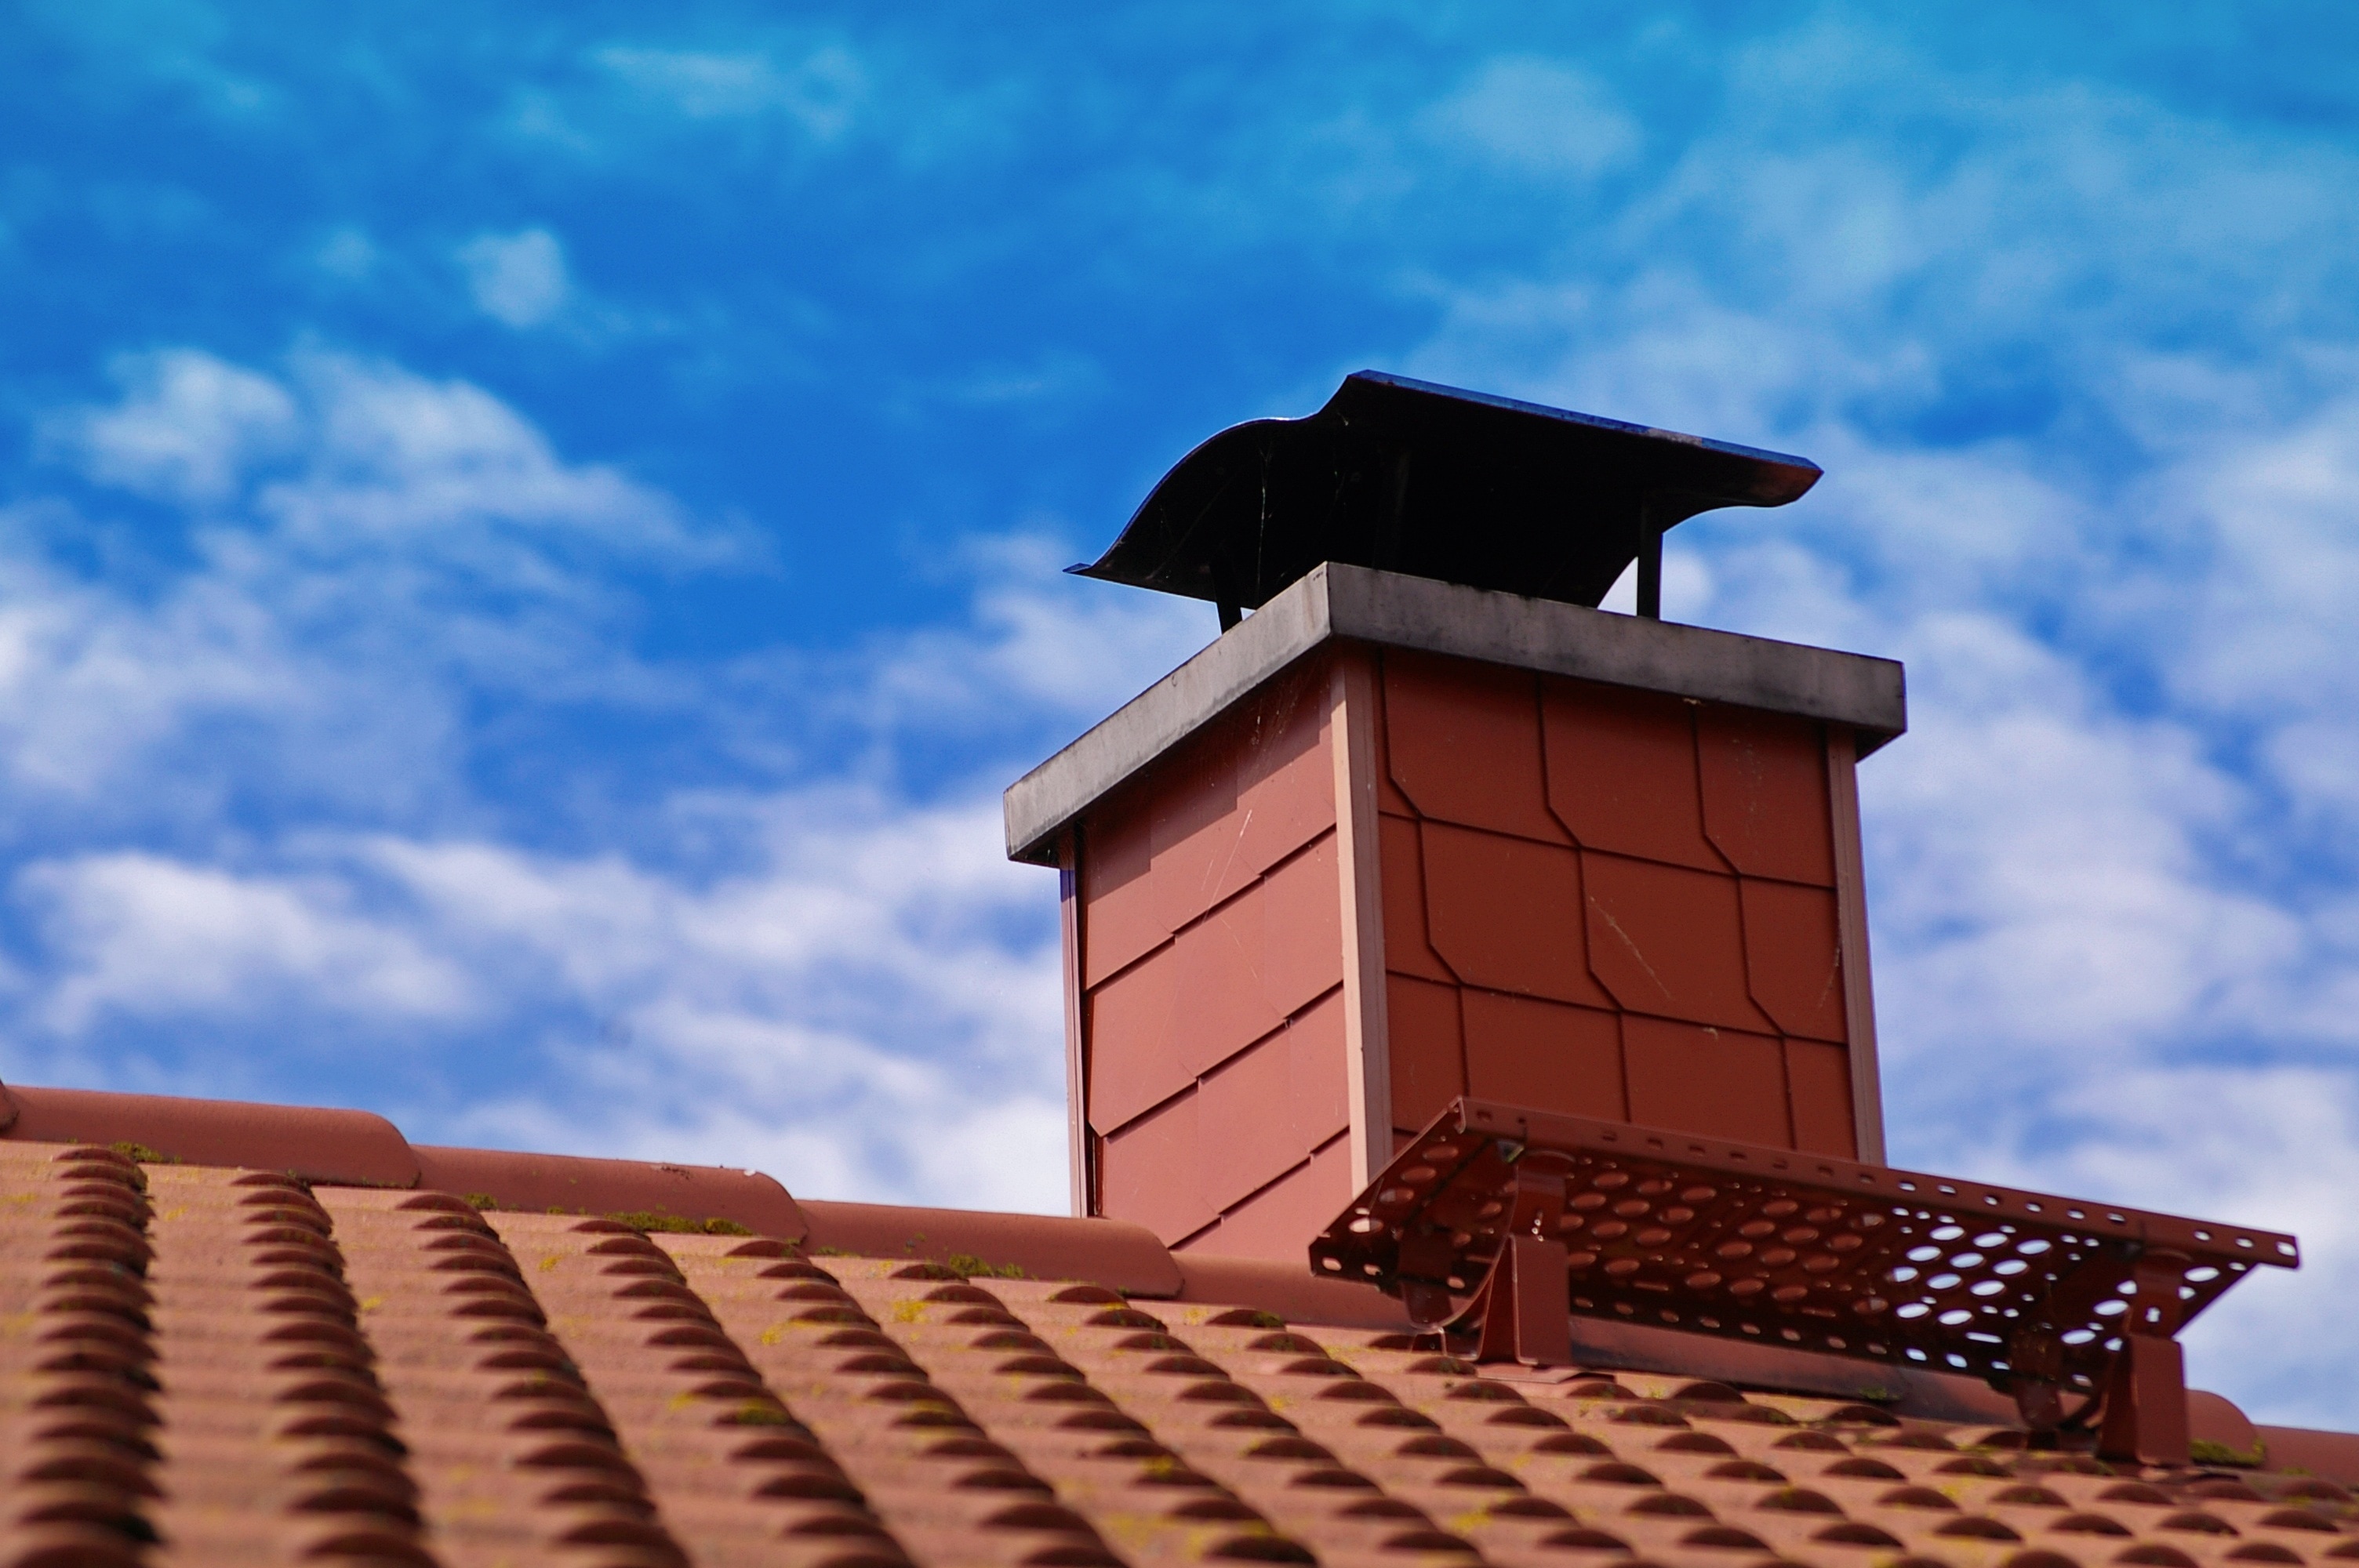 orange chimney under blue sky during day time